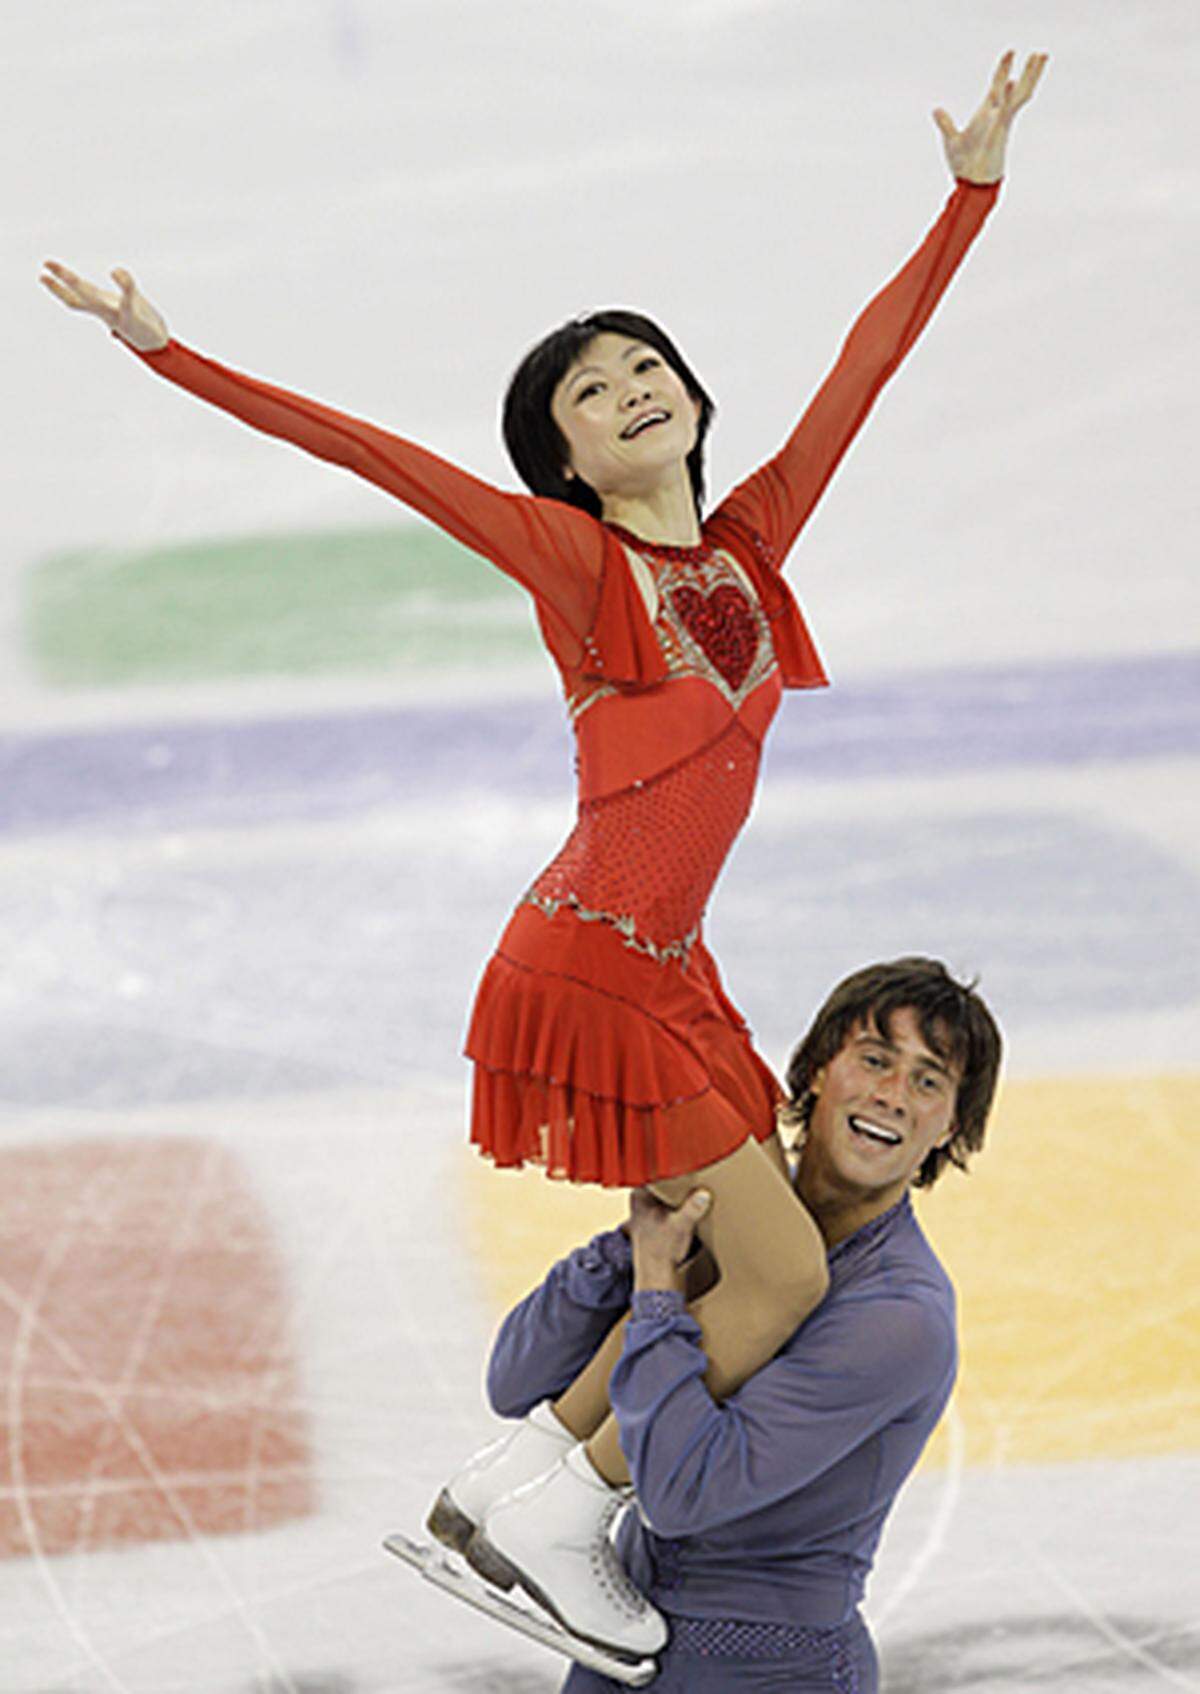 Die Leichteste: Yuko Kawaguti (Russland/Eiskunstlauf), 38 kg